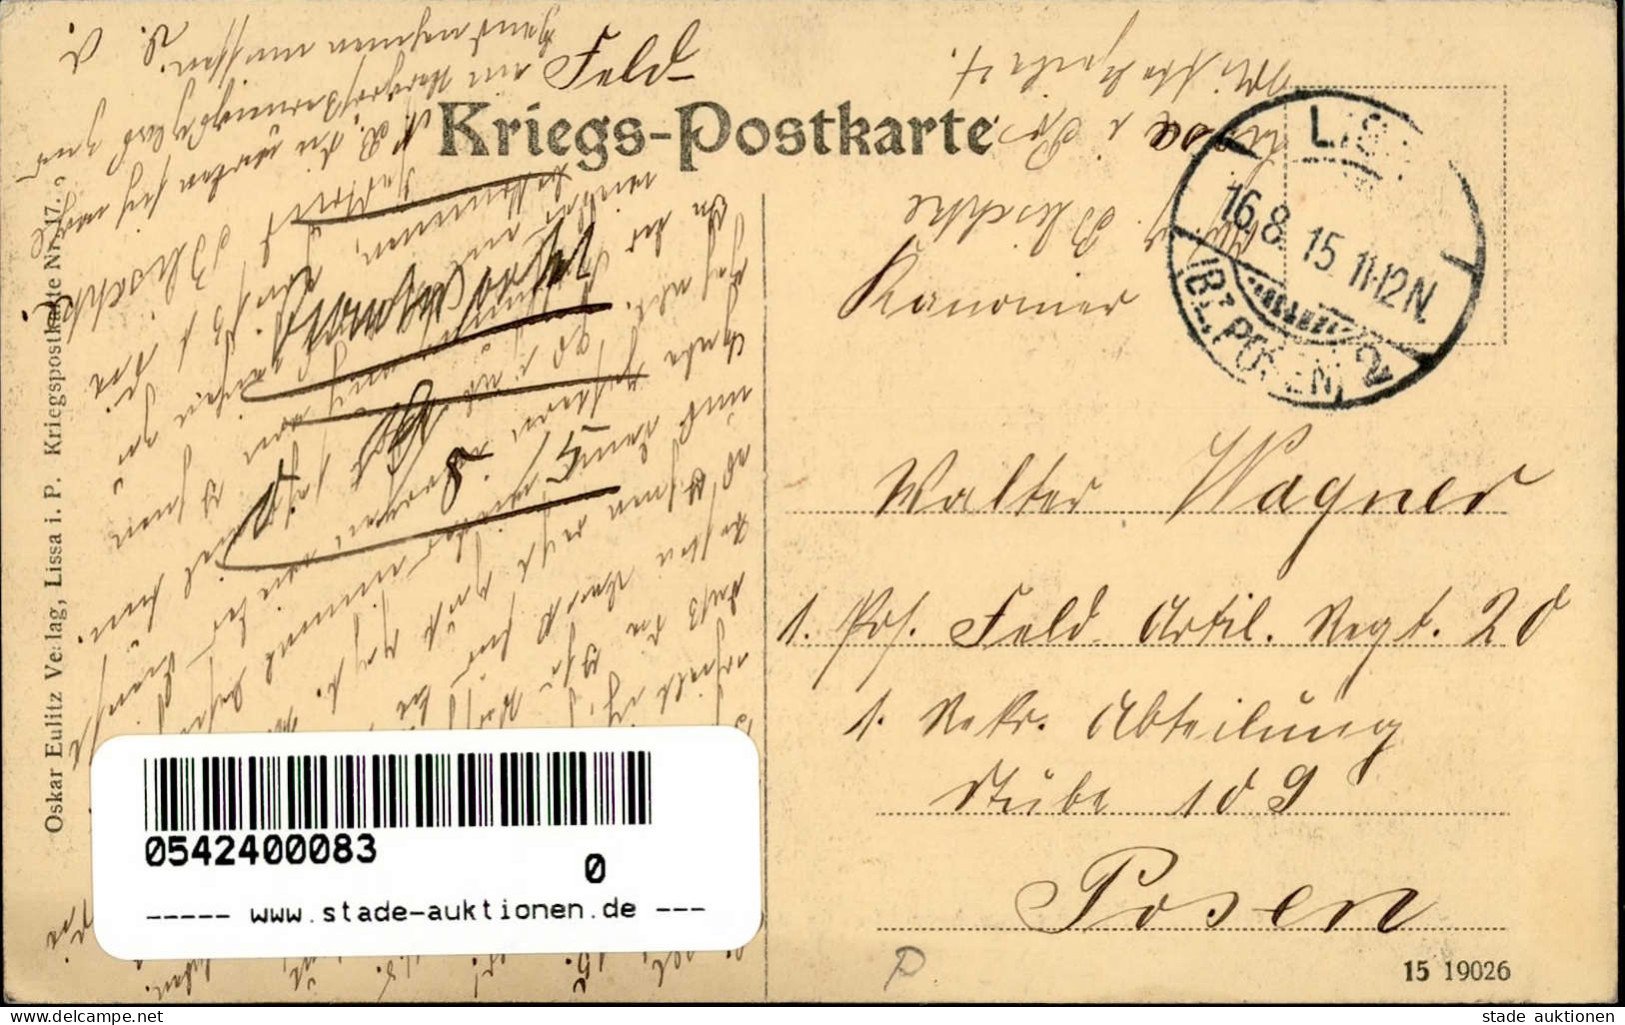 Lissa Liebesgabenstelle In Der Ostmark 1915 I- - Pologne